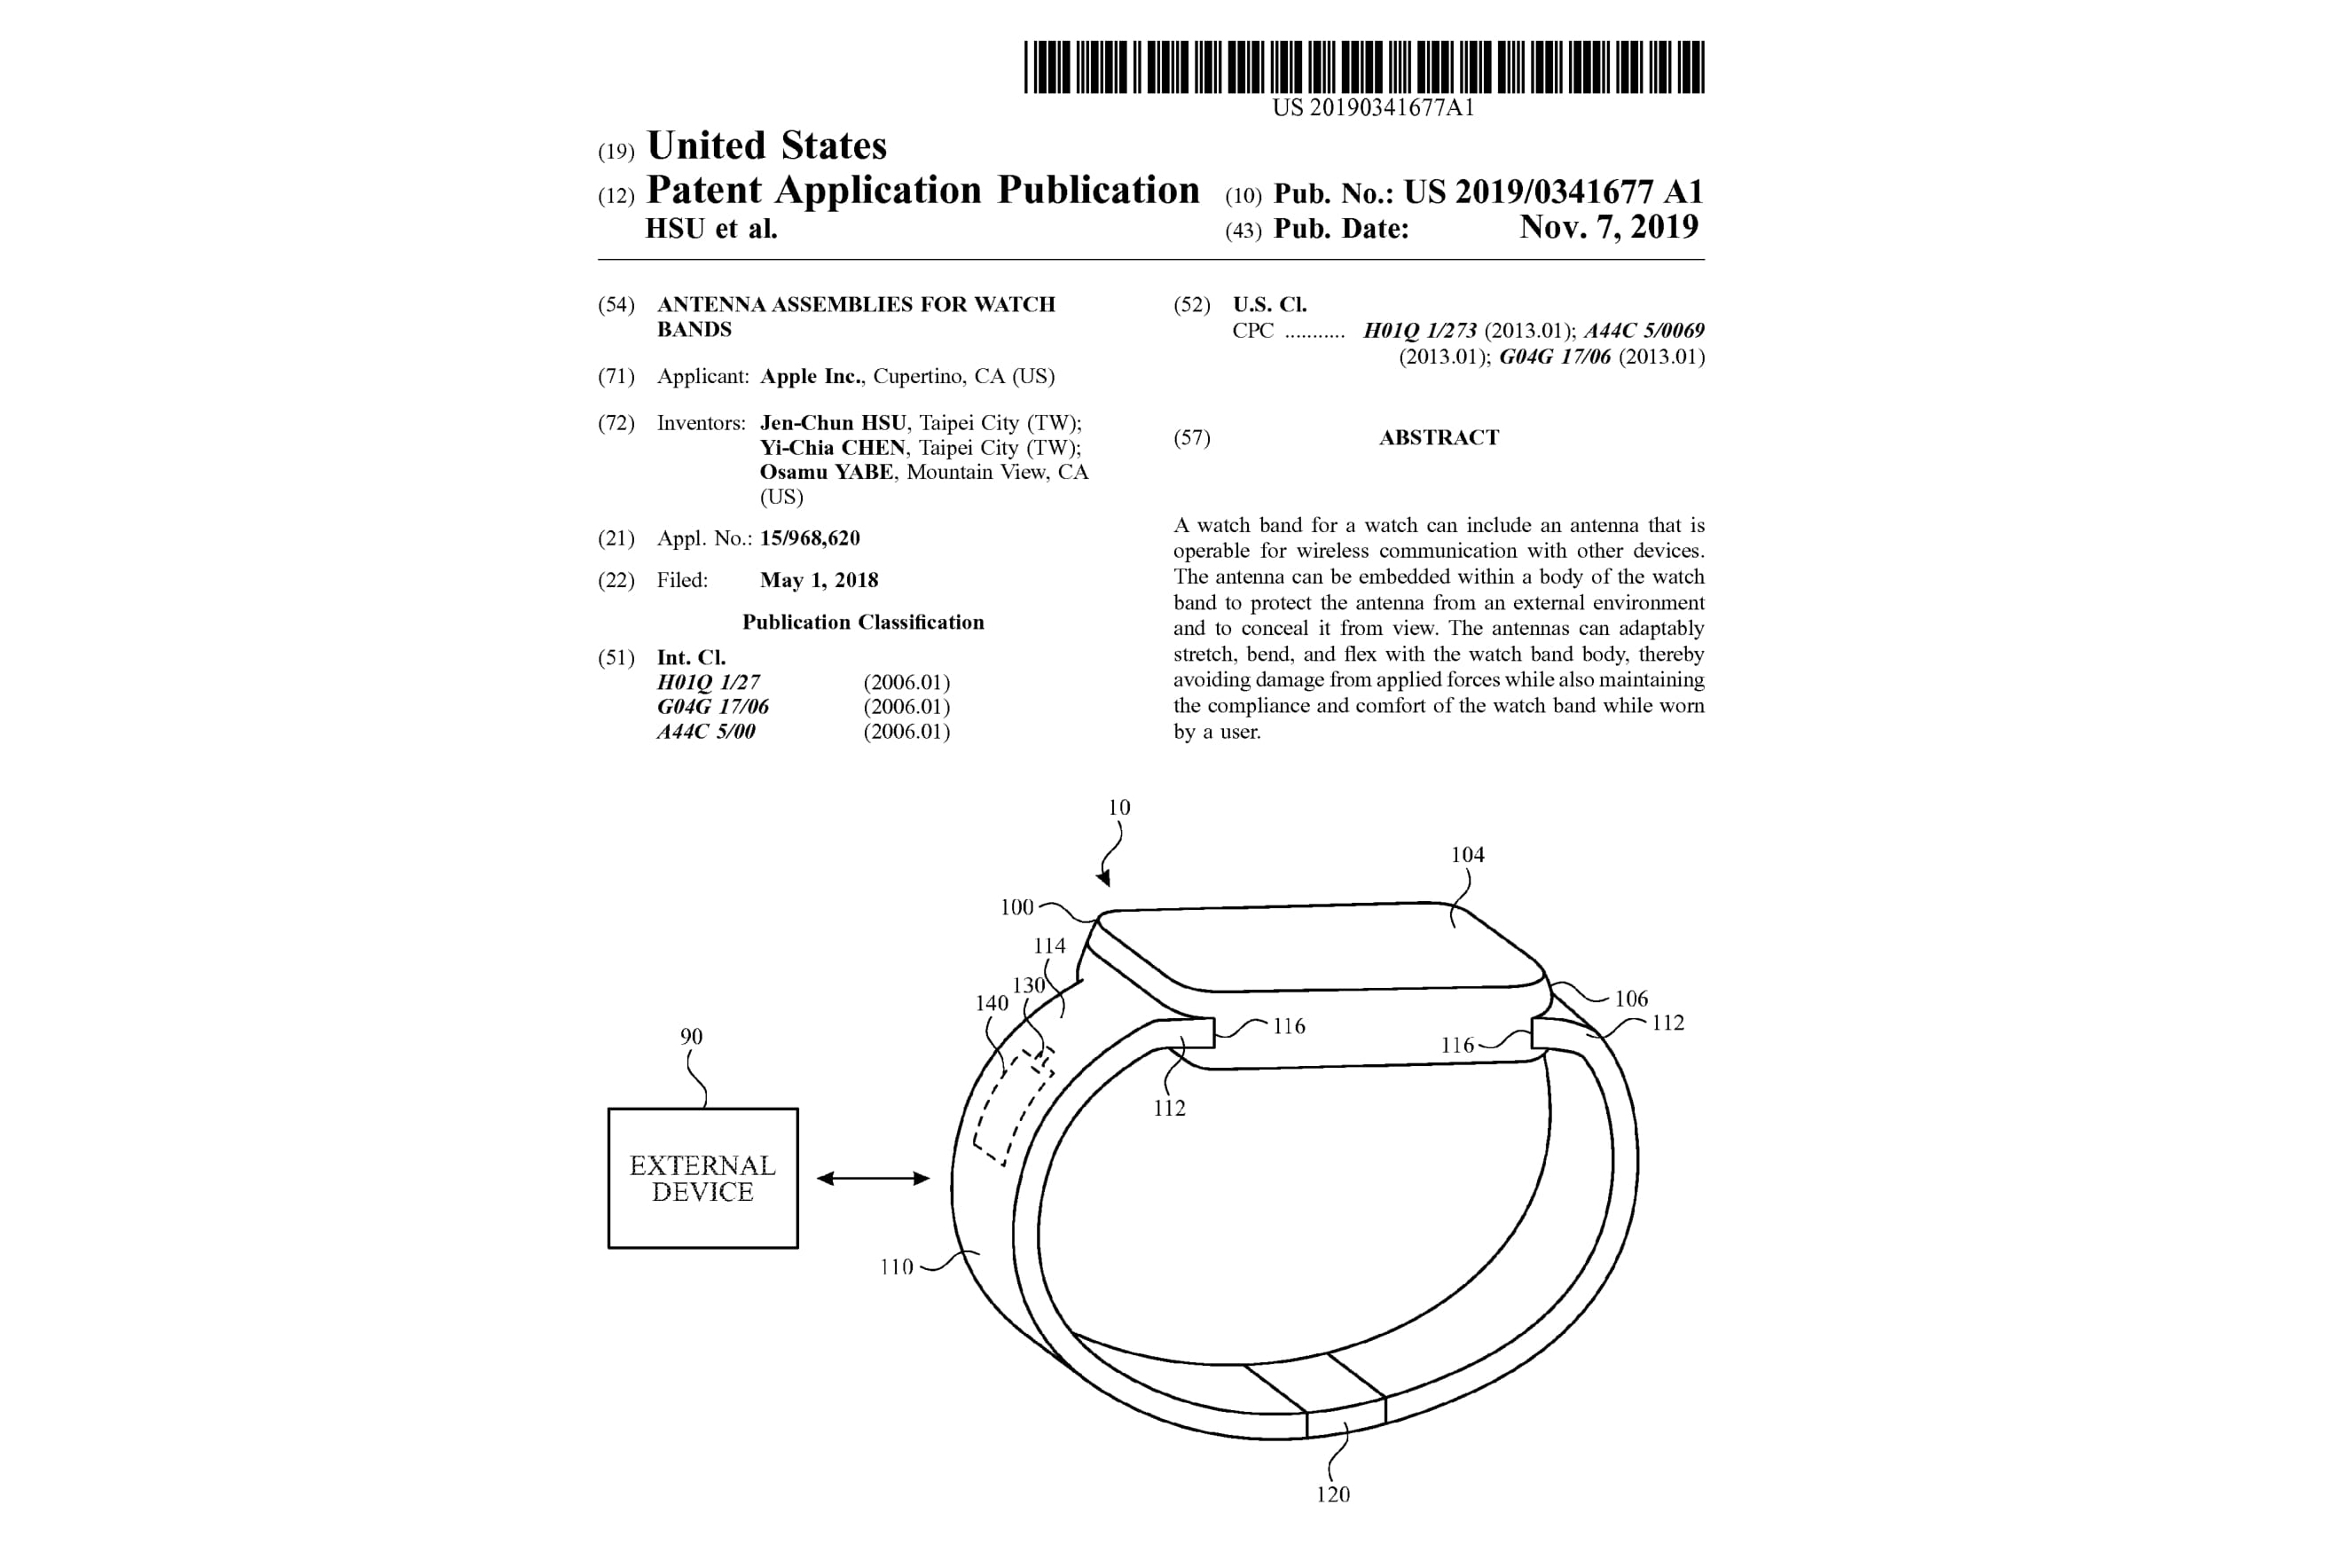 Apple dient nieuw patent in voor Apple Watch